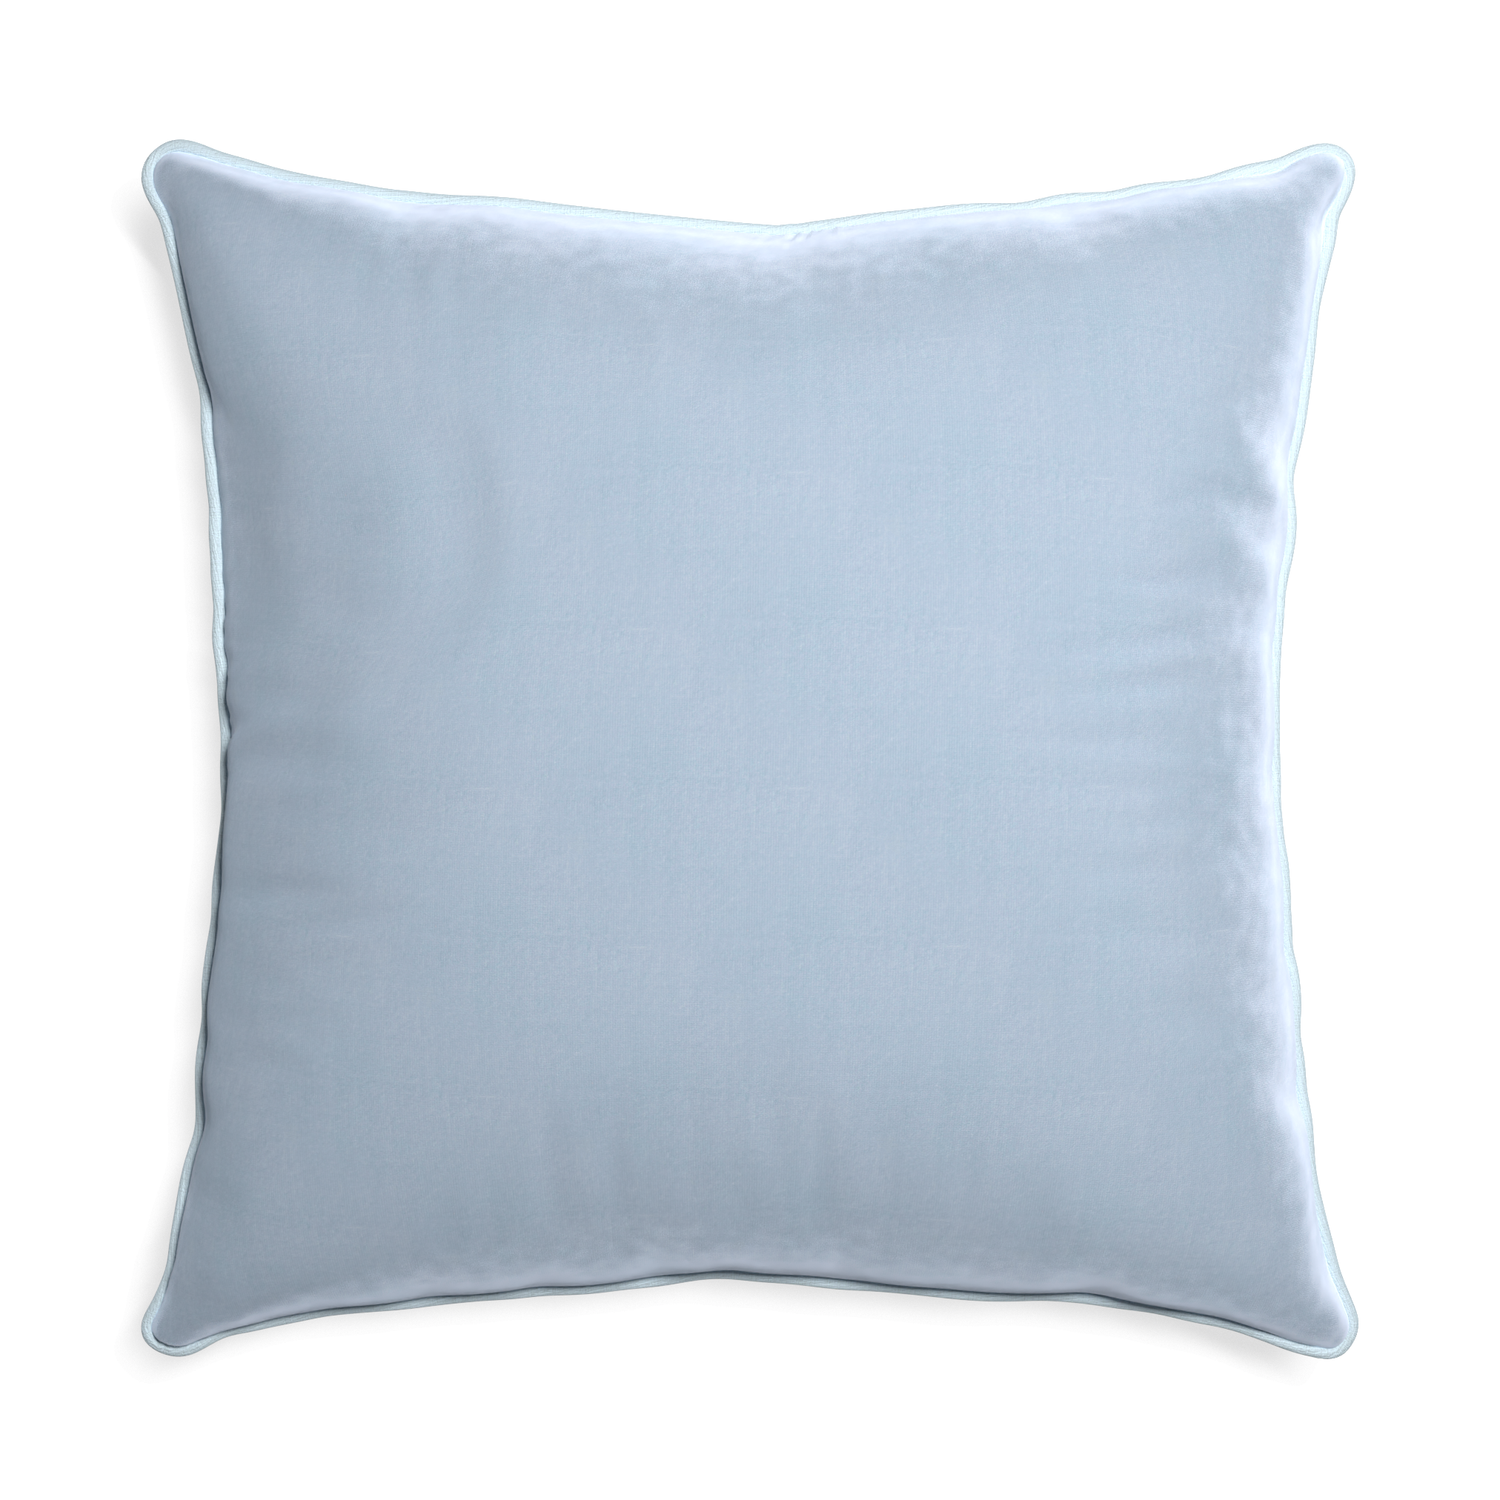 Euro-sham sky velvet custom pillow with powder piping on white background